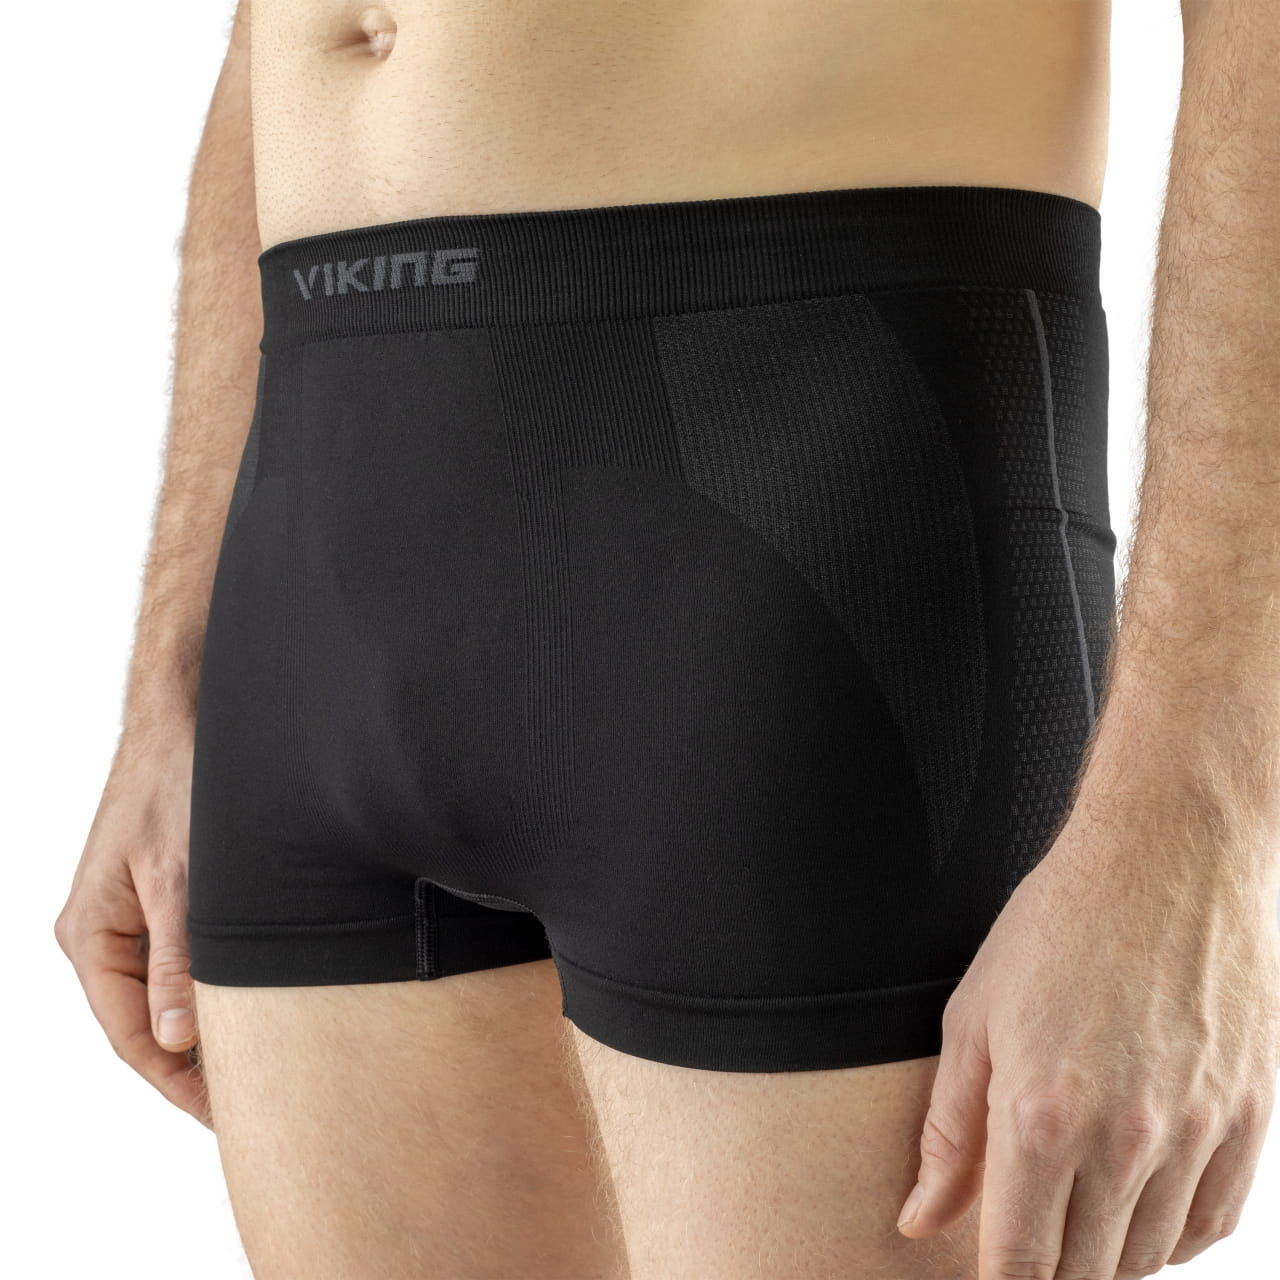 Pánská funkční prádlo Viking Underwear  Eiger